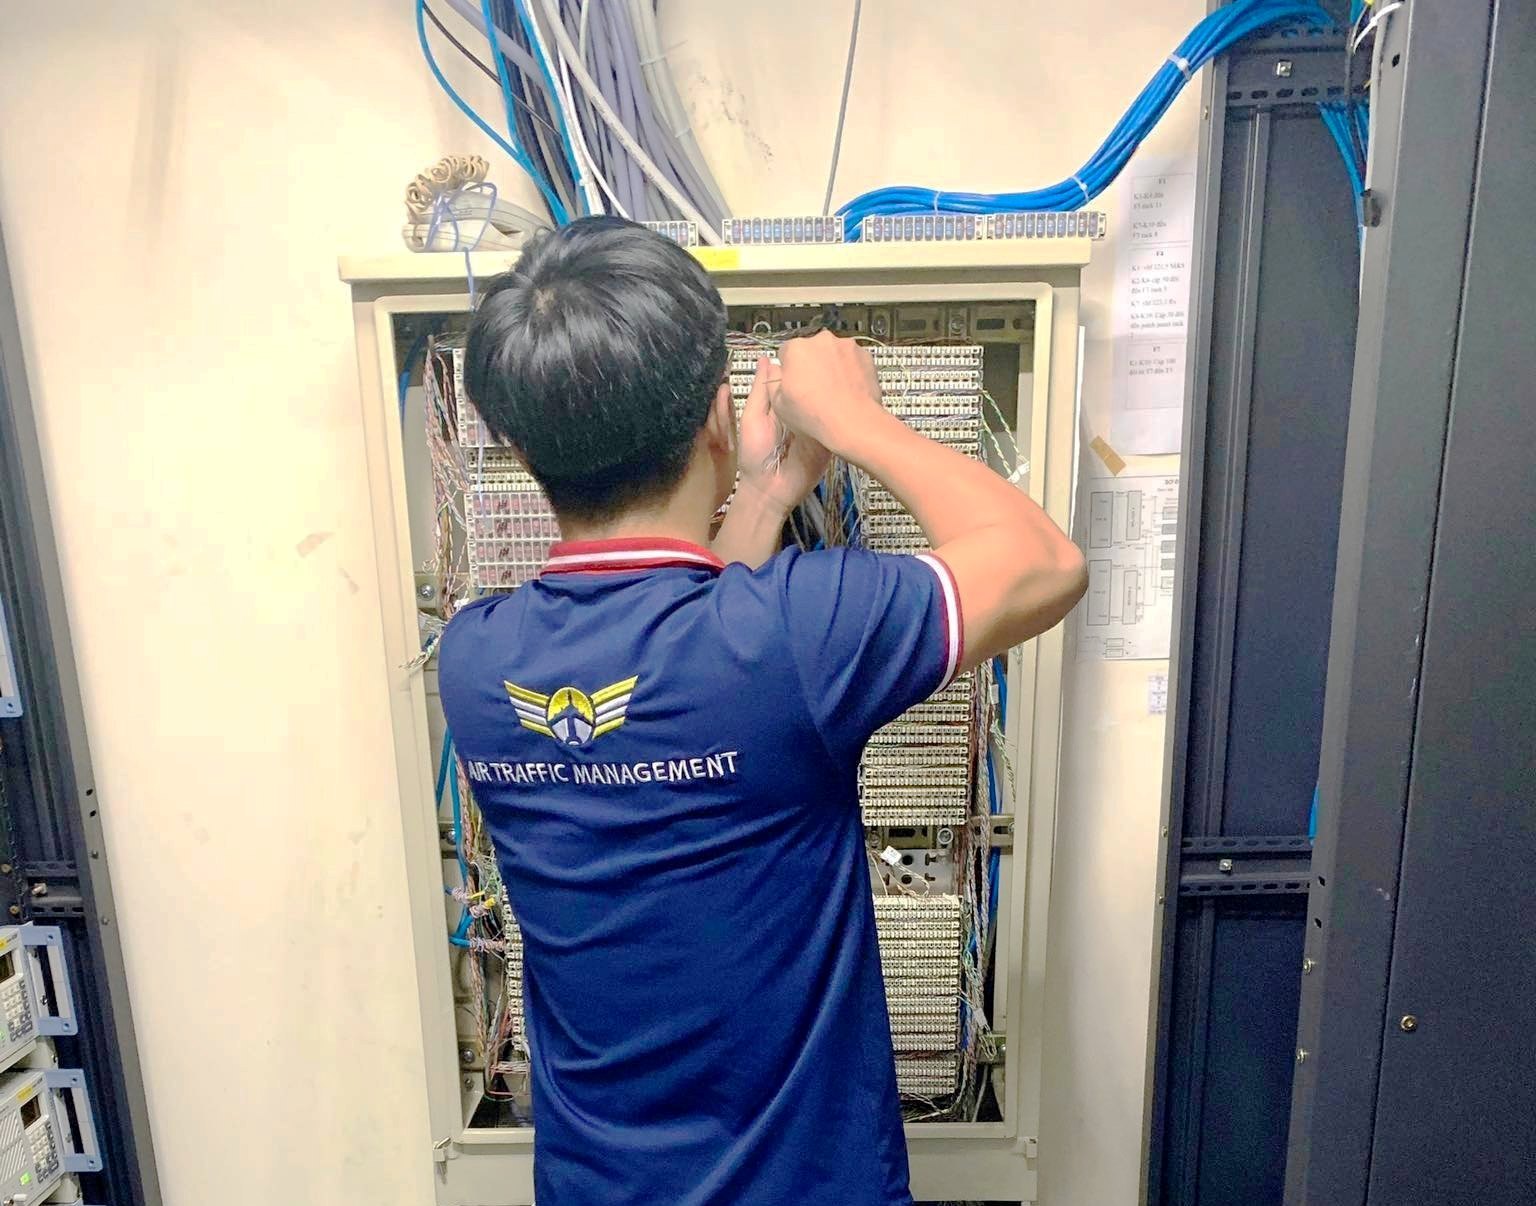 Lắp đặt, đấu nối thành công tín hiệu hệ thống VCS 3020X cho APP/TWR Đà Nẵng